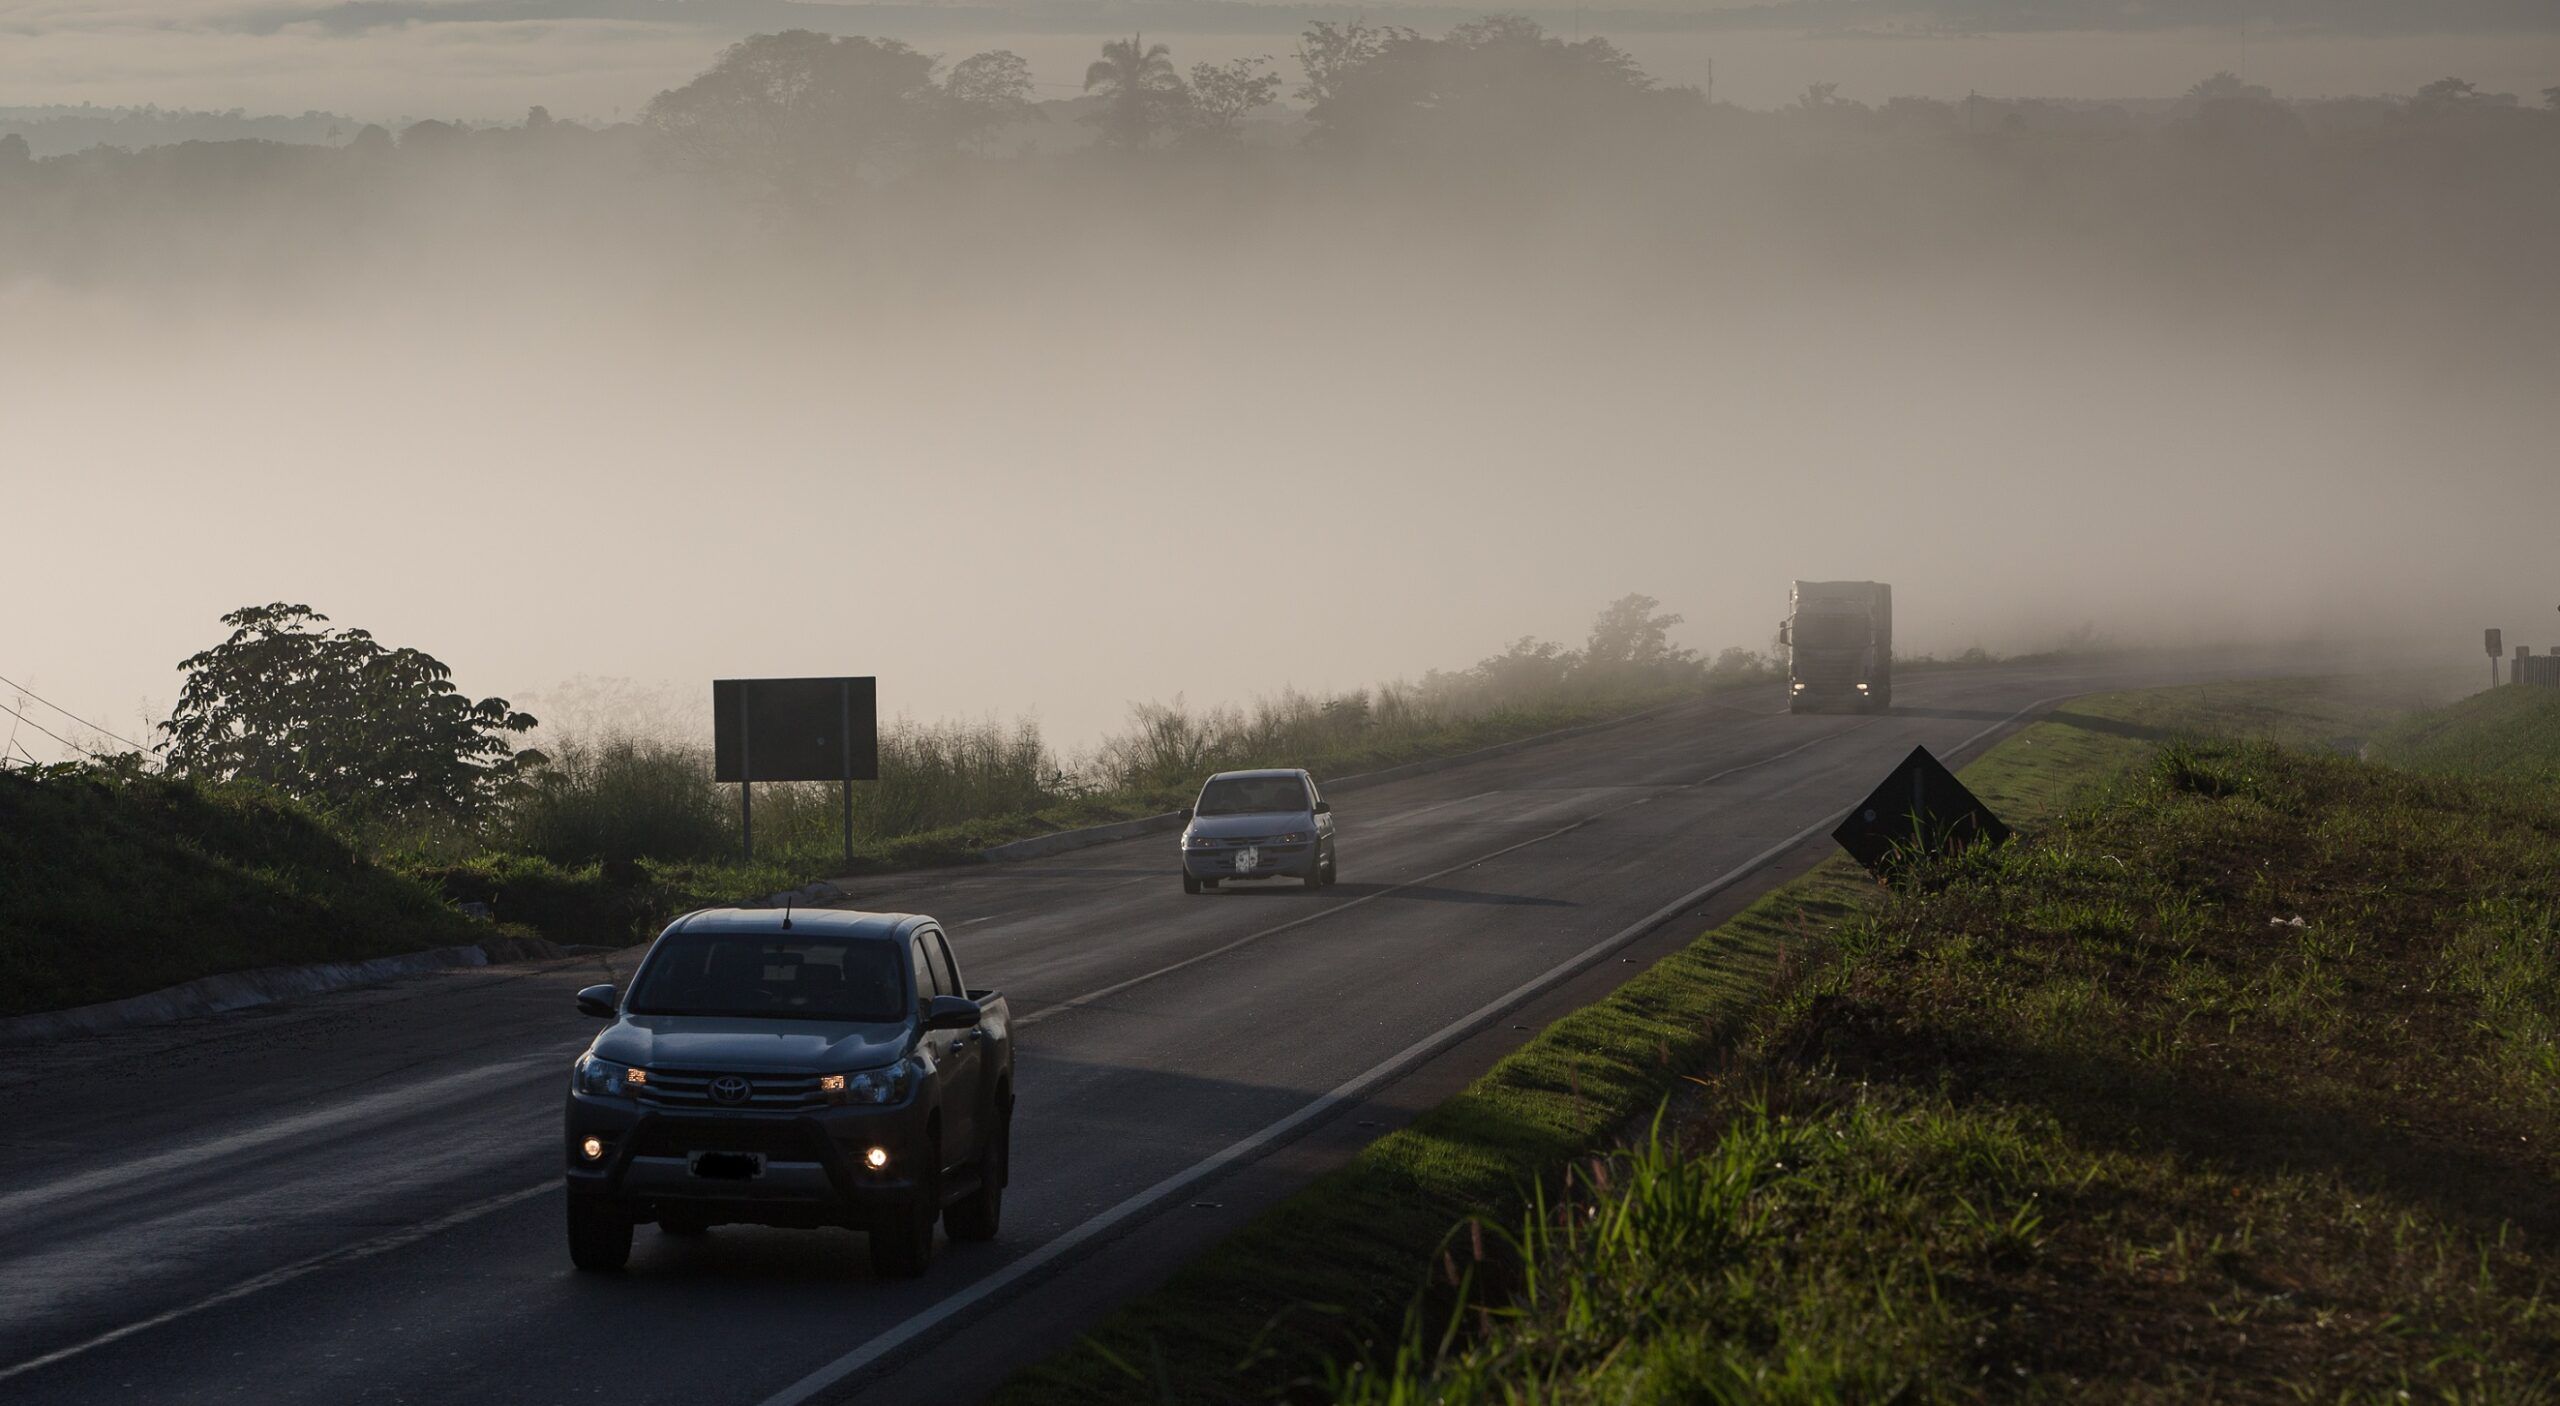 Neblina em Mato Grosso